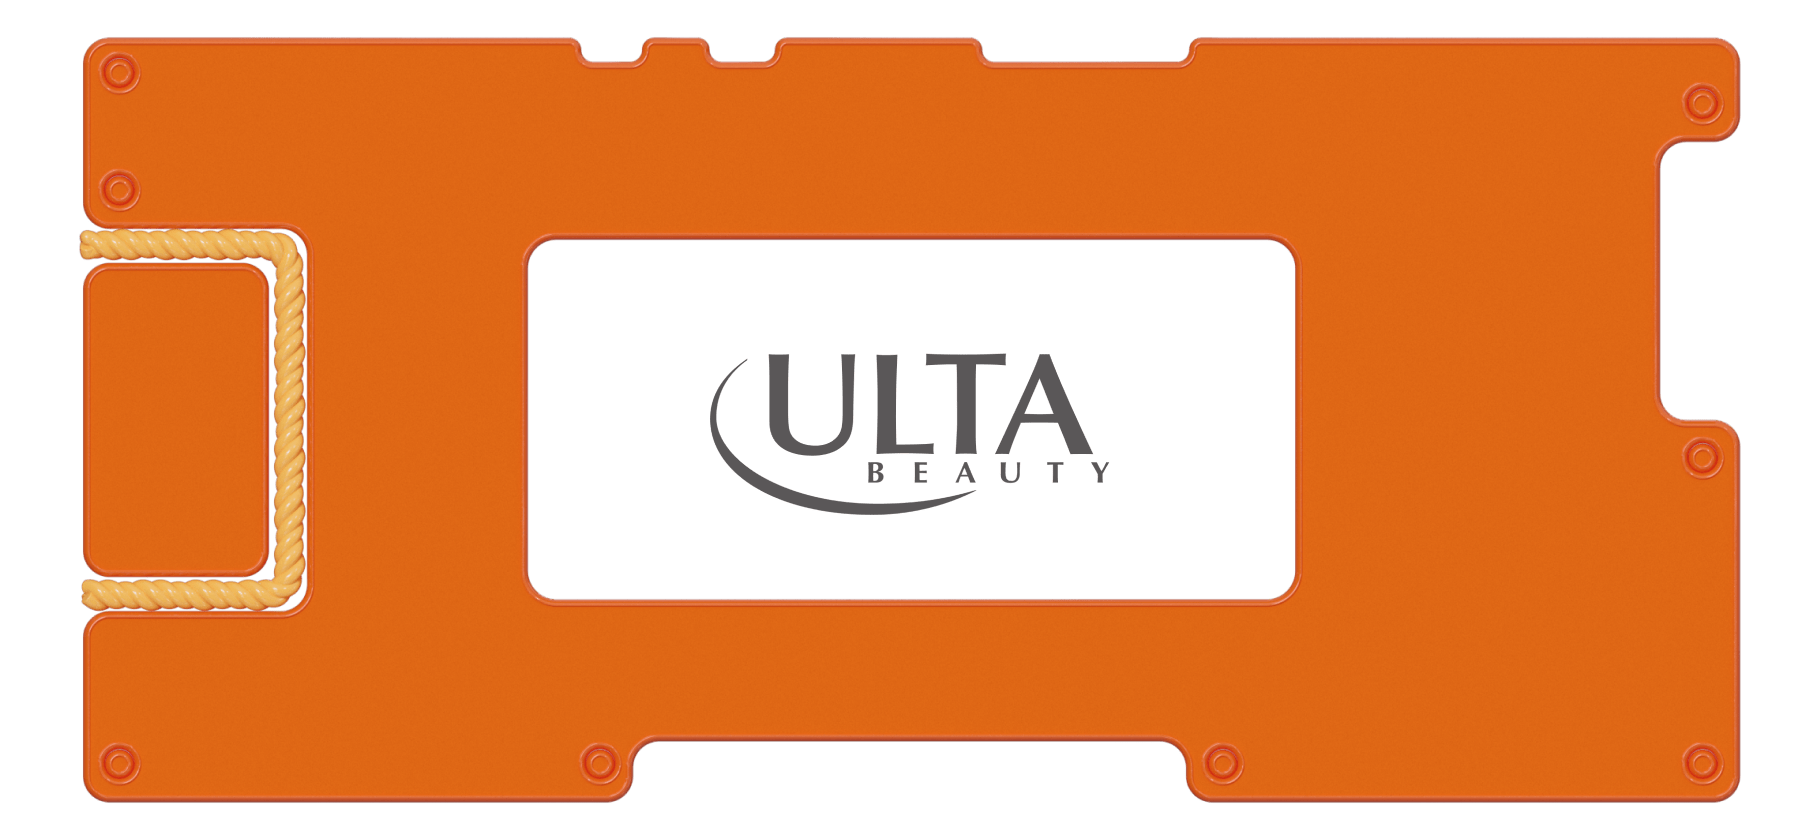 Обзор Ulta Beauty: розничные магазины для заботы о себе